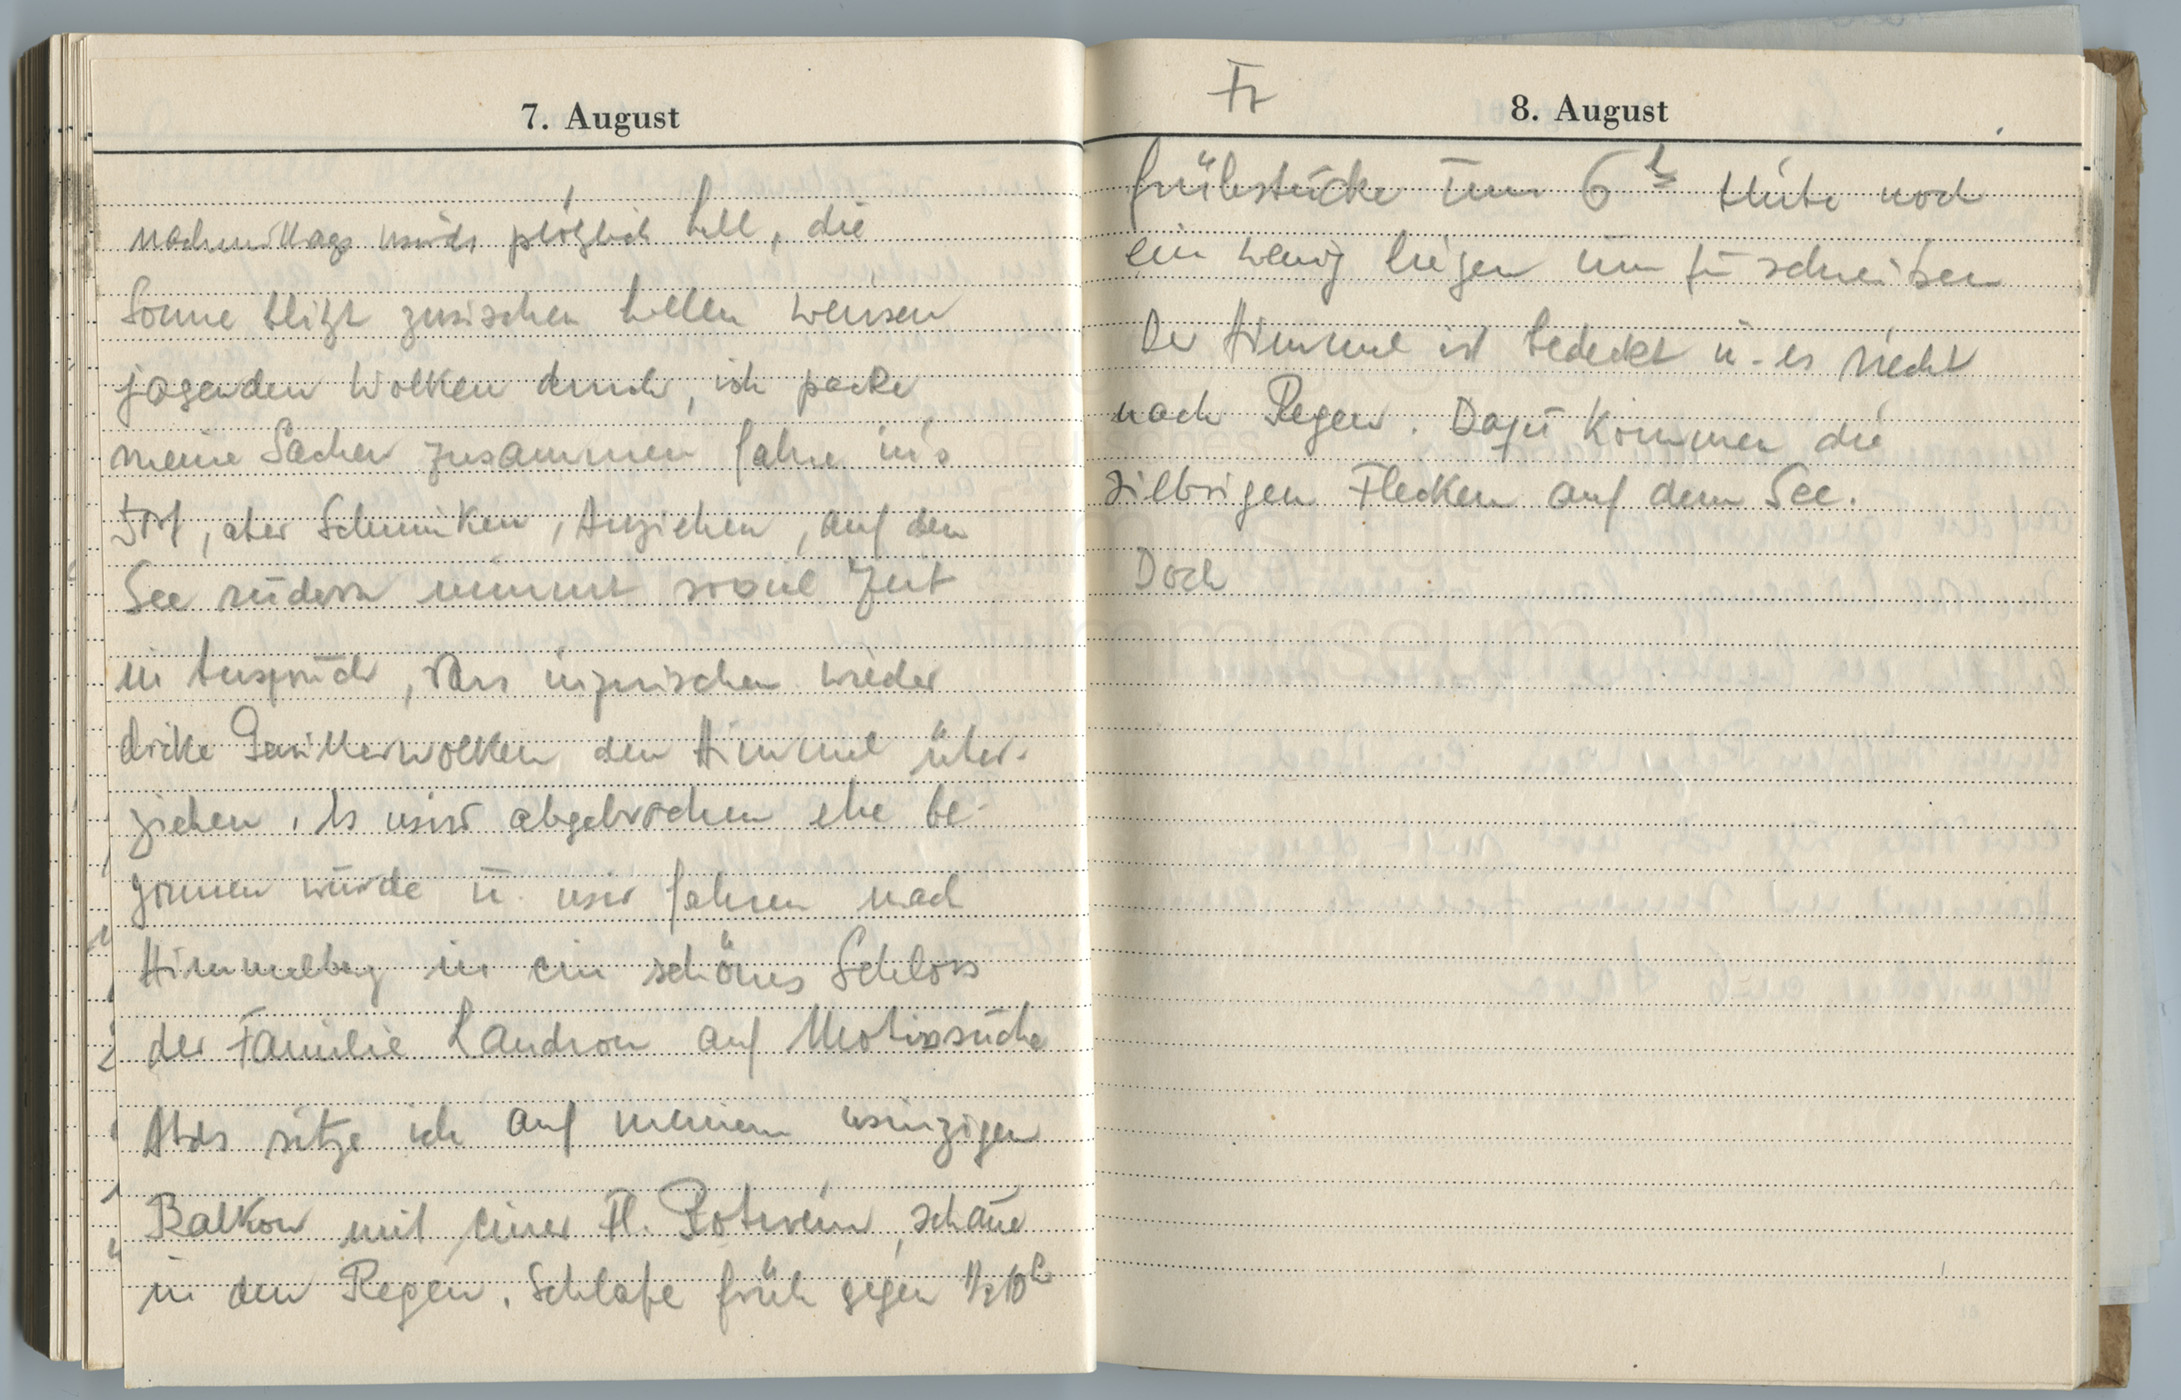 Tagebucheintragungen vom 5.8. bis 8.8.1947